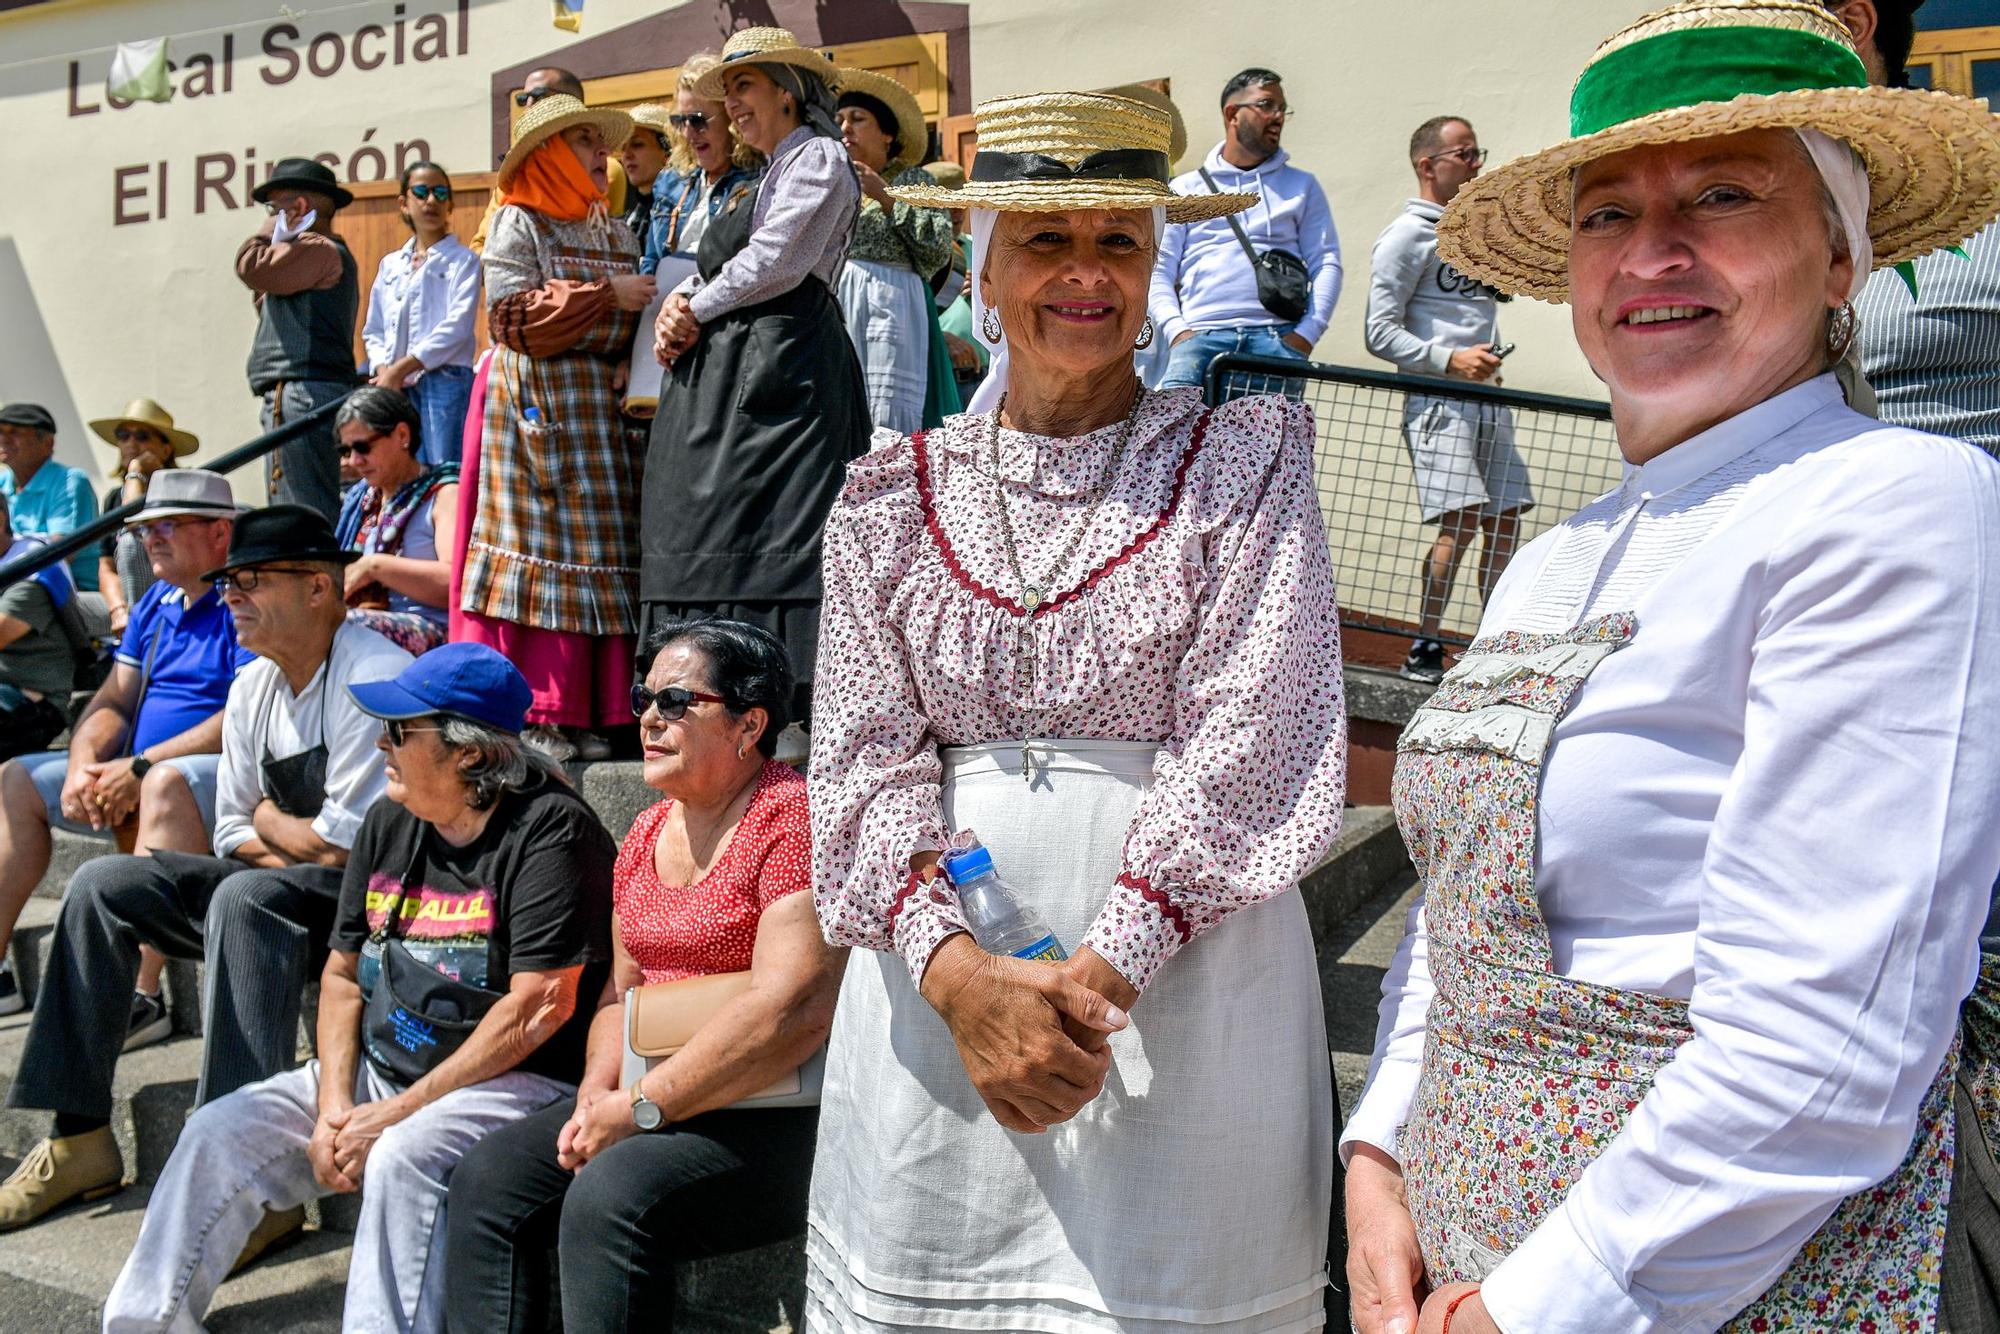 Dia de las tradiciones en Tenteniguada